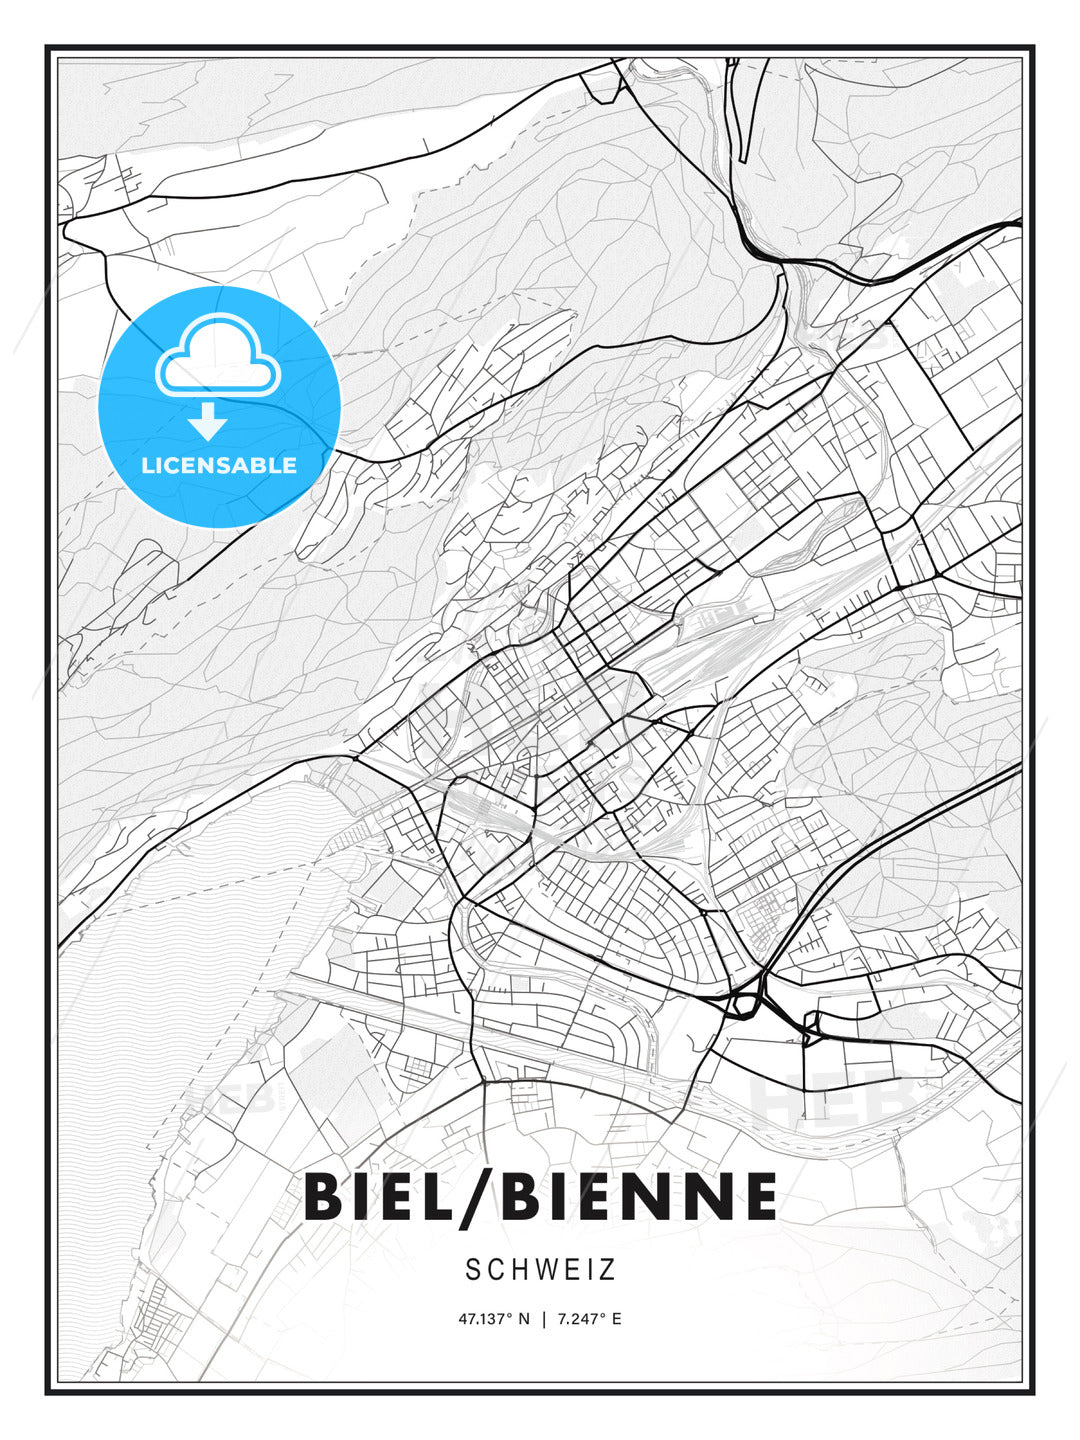 Biel/Bienne, Switzerland, Modern Print Template in Various Formats - HEBSTREITS Sketches